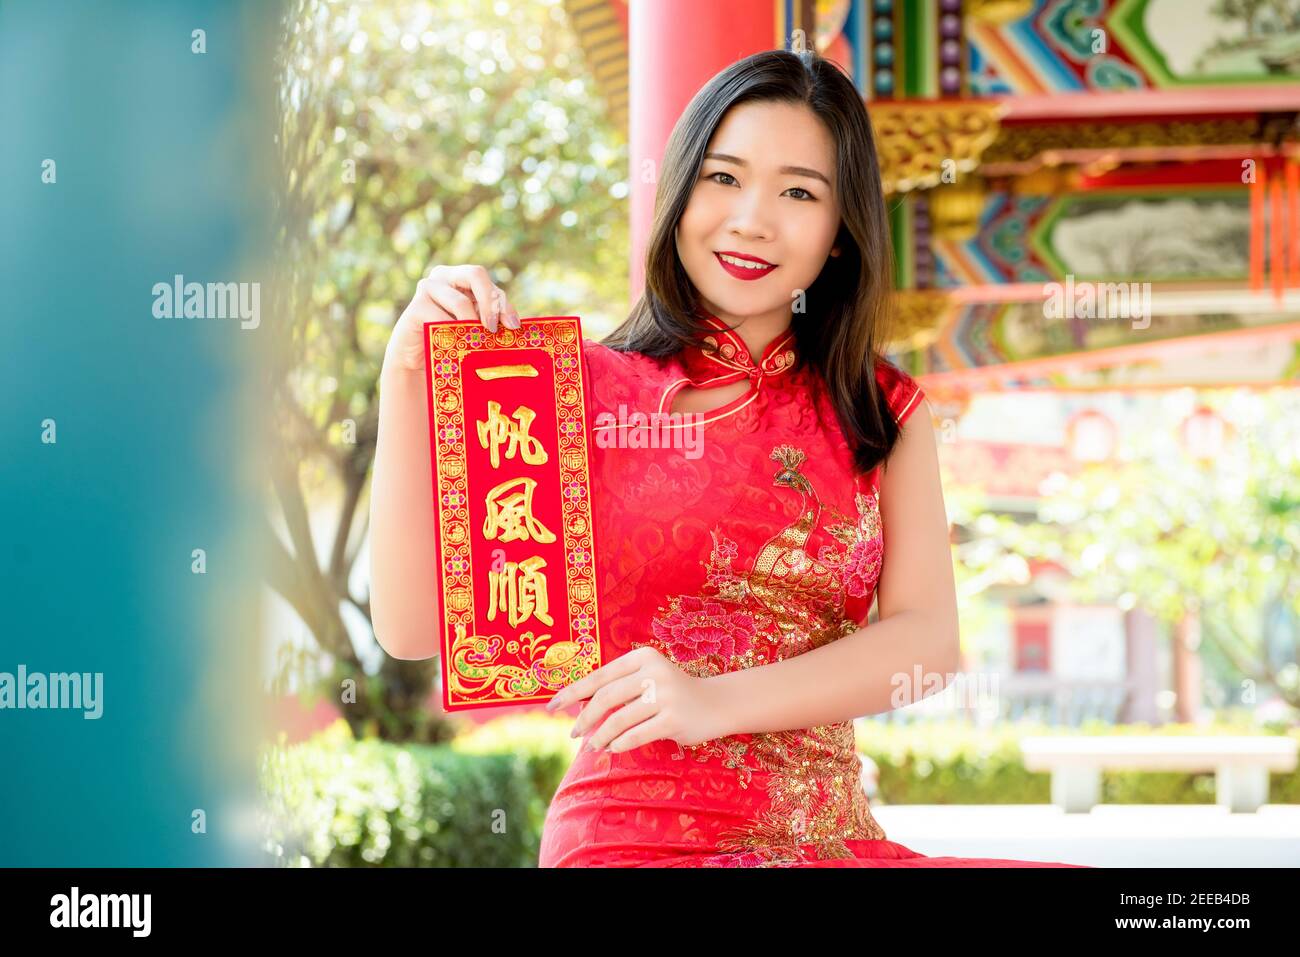 Lächelnde asiatische Frau in traditionellen roten Cheongsam Qipao Kleid zeigt Chinesisches Neujahrsgruß-Textschild sagte: "Alles wird sein Gut“ Stockfoto